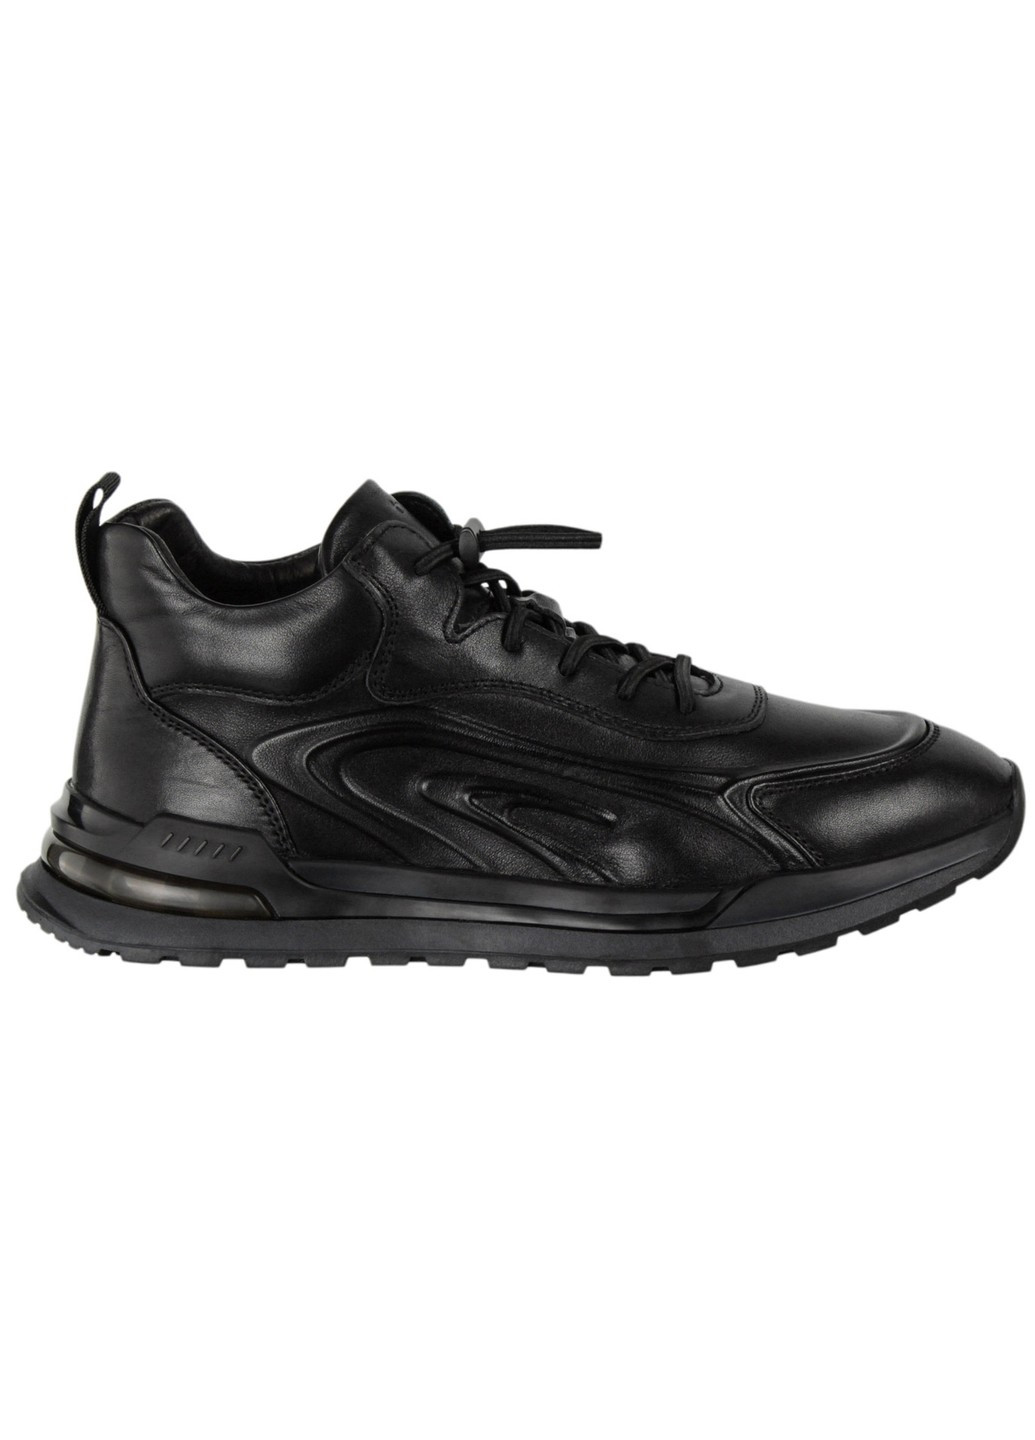 Черные зимние мужские ботинки 199485 Buts